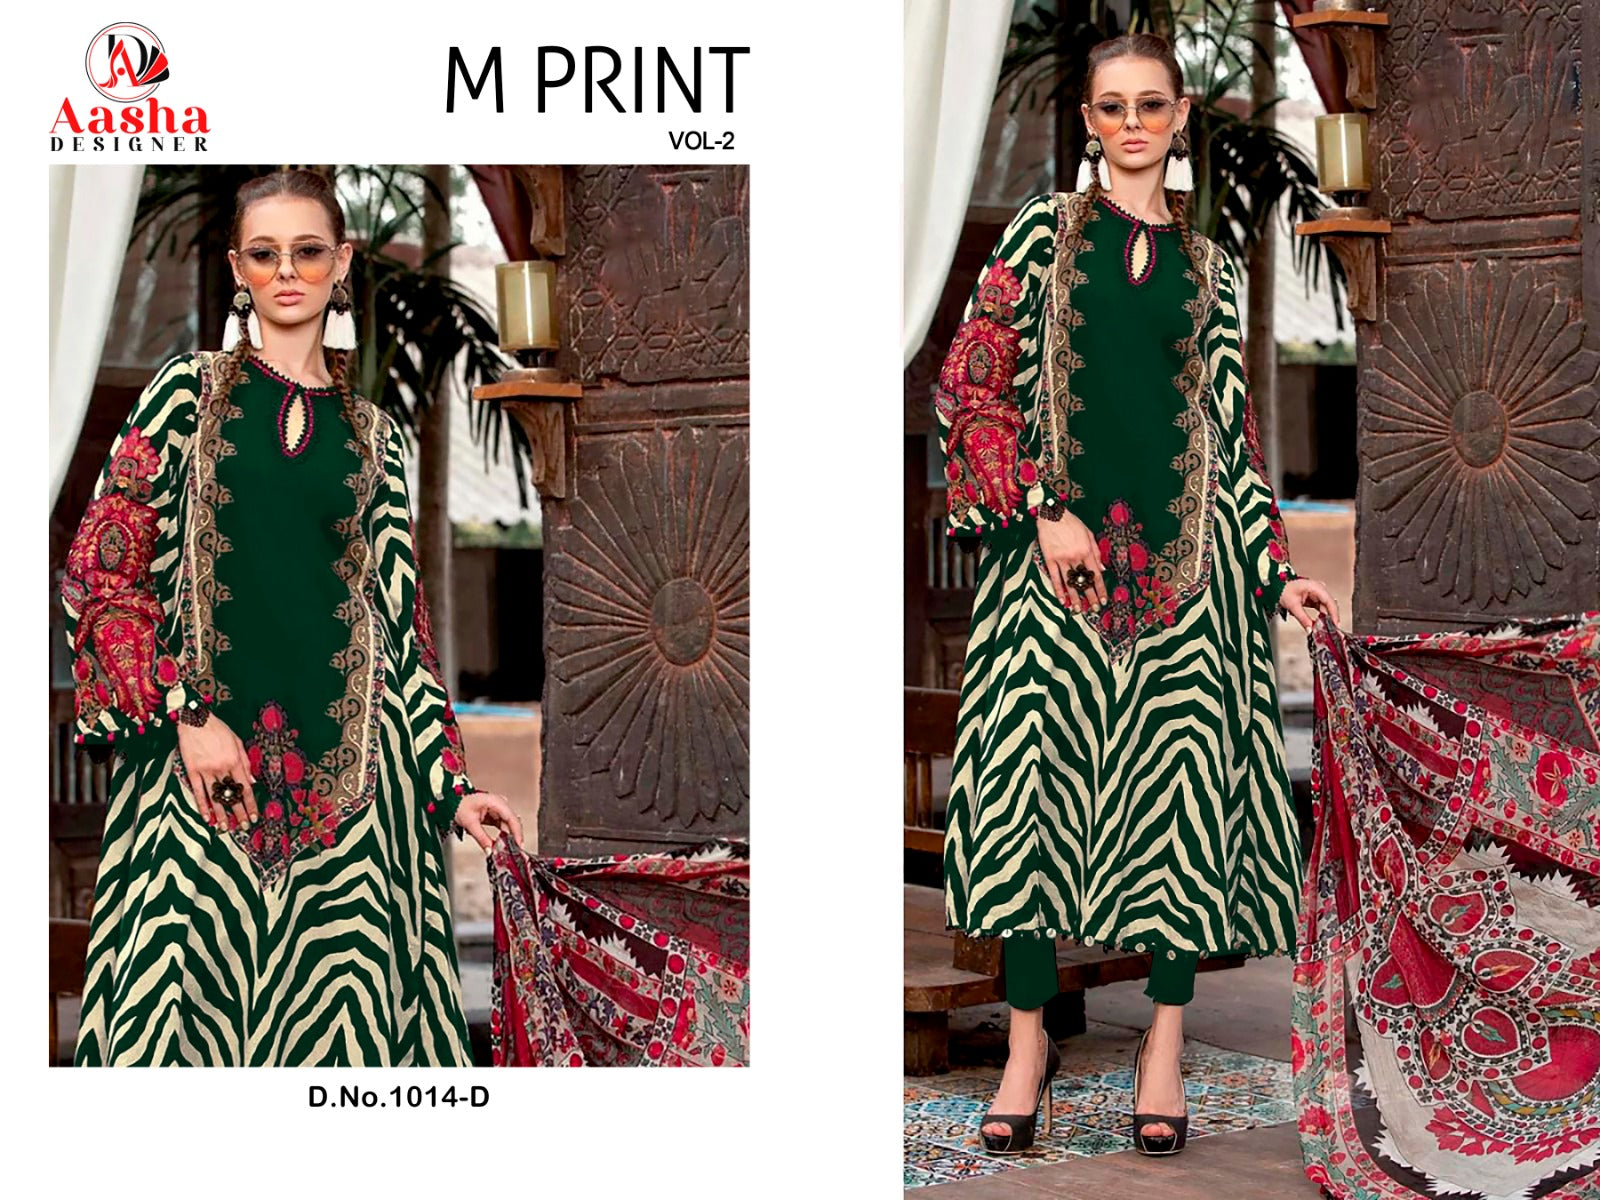 Aasha Designer M Print Vol 2 D.No.1014 Cotton Printed Patch Work Chiffon Dupatta Pakistani Suit Wholesale Supplier - jilaniwholesalesuit